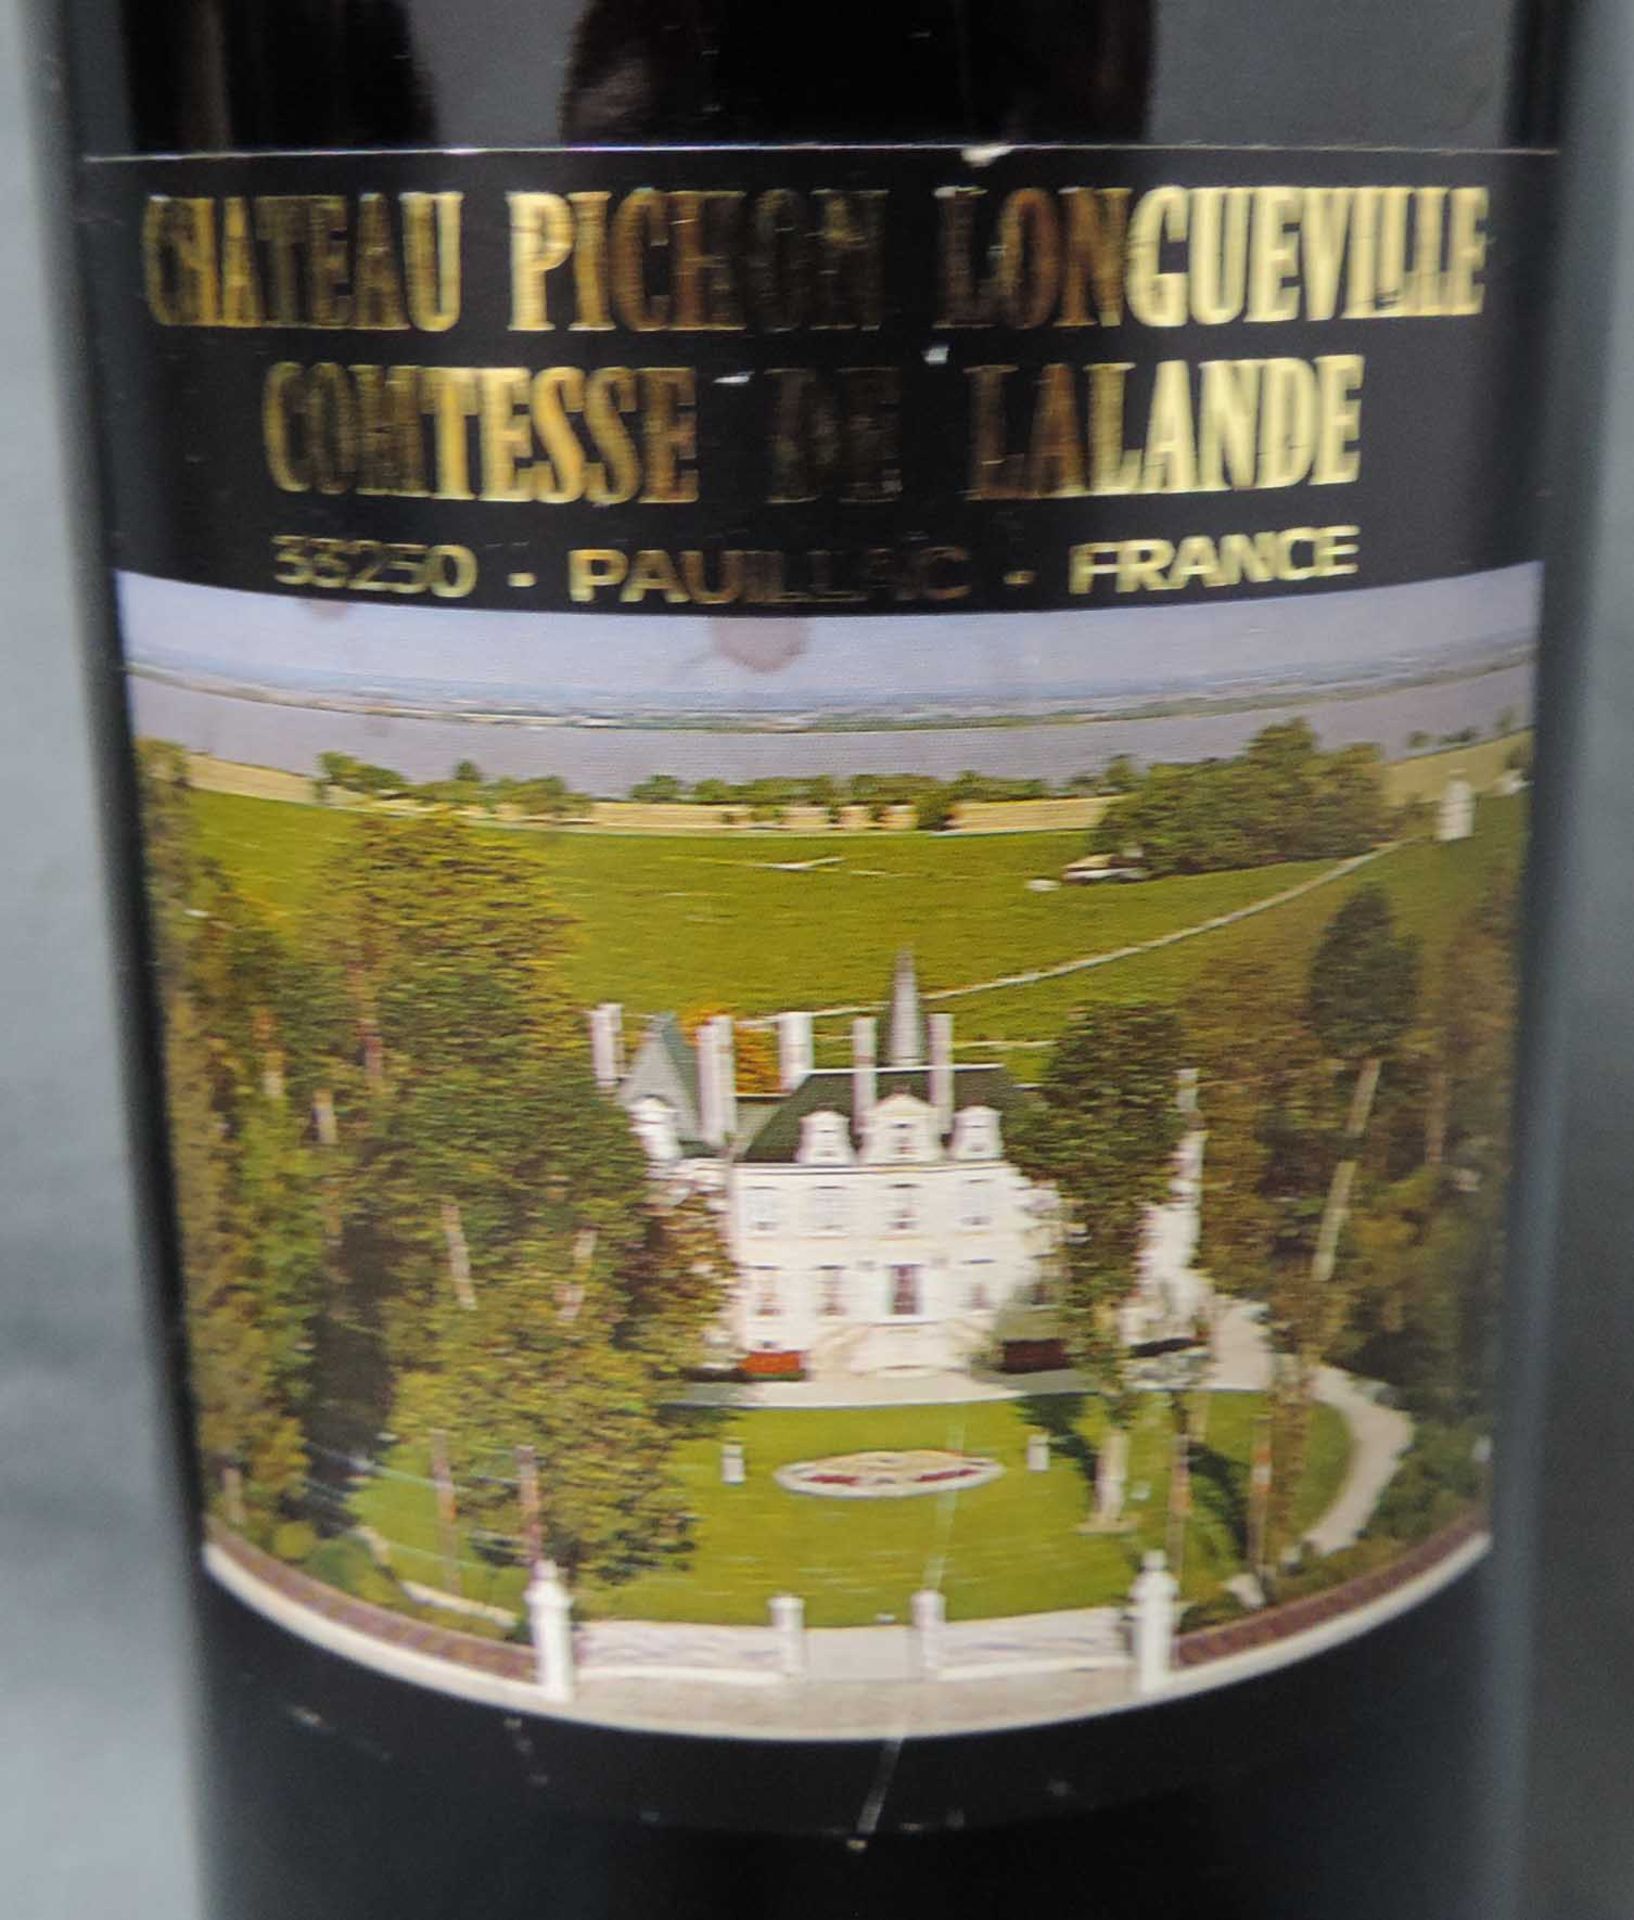 1990 Chateaux Pichon Longueville Comtesse de Lalande, Pauliac.und 1983 Pavillion Rouge du Chateau - Bild 3 aus 4